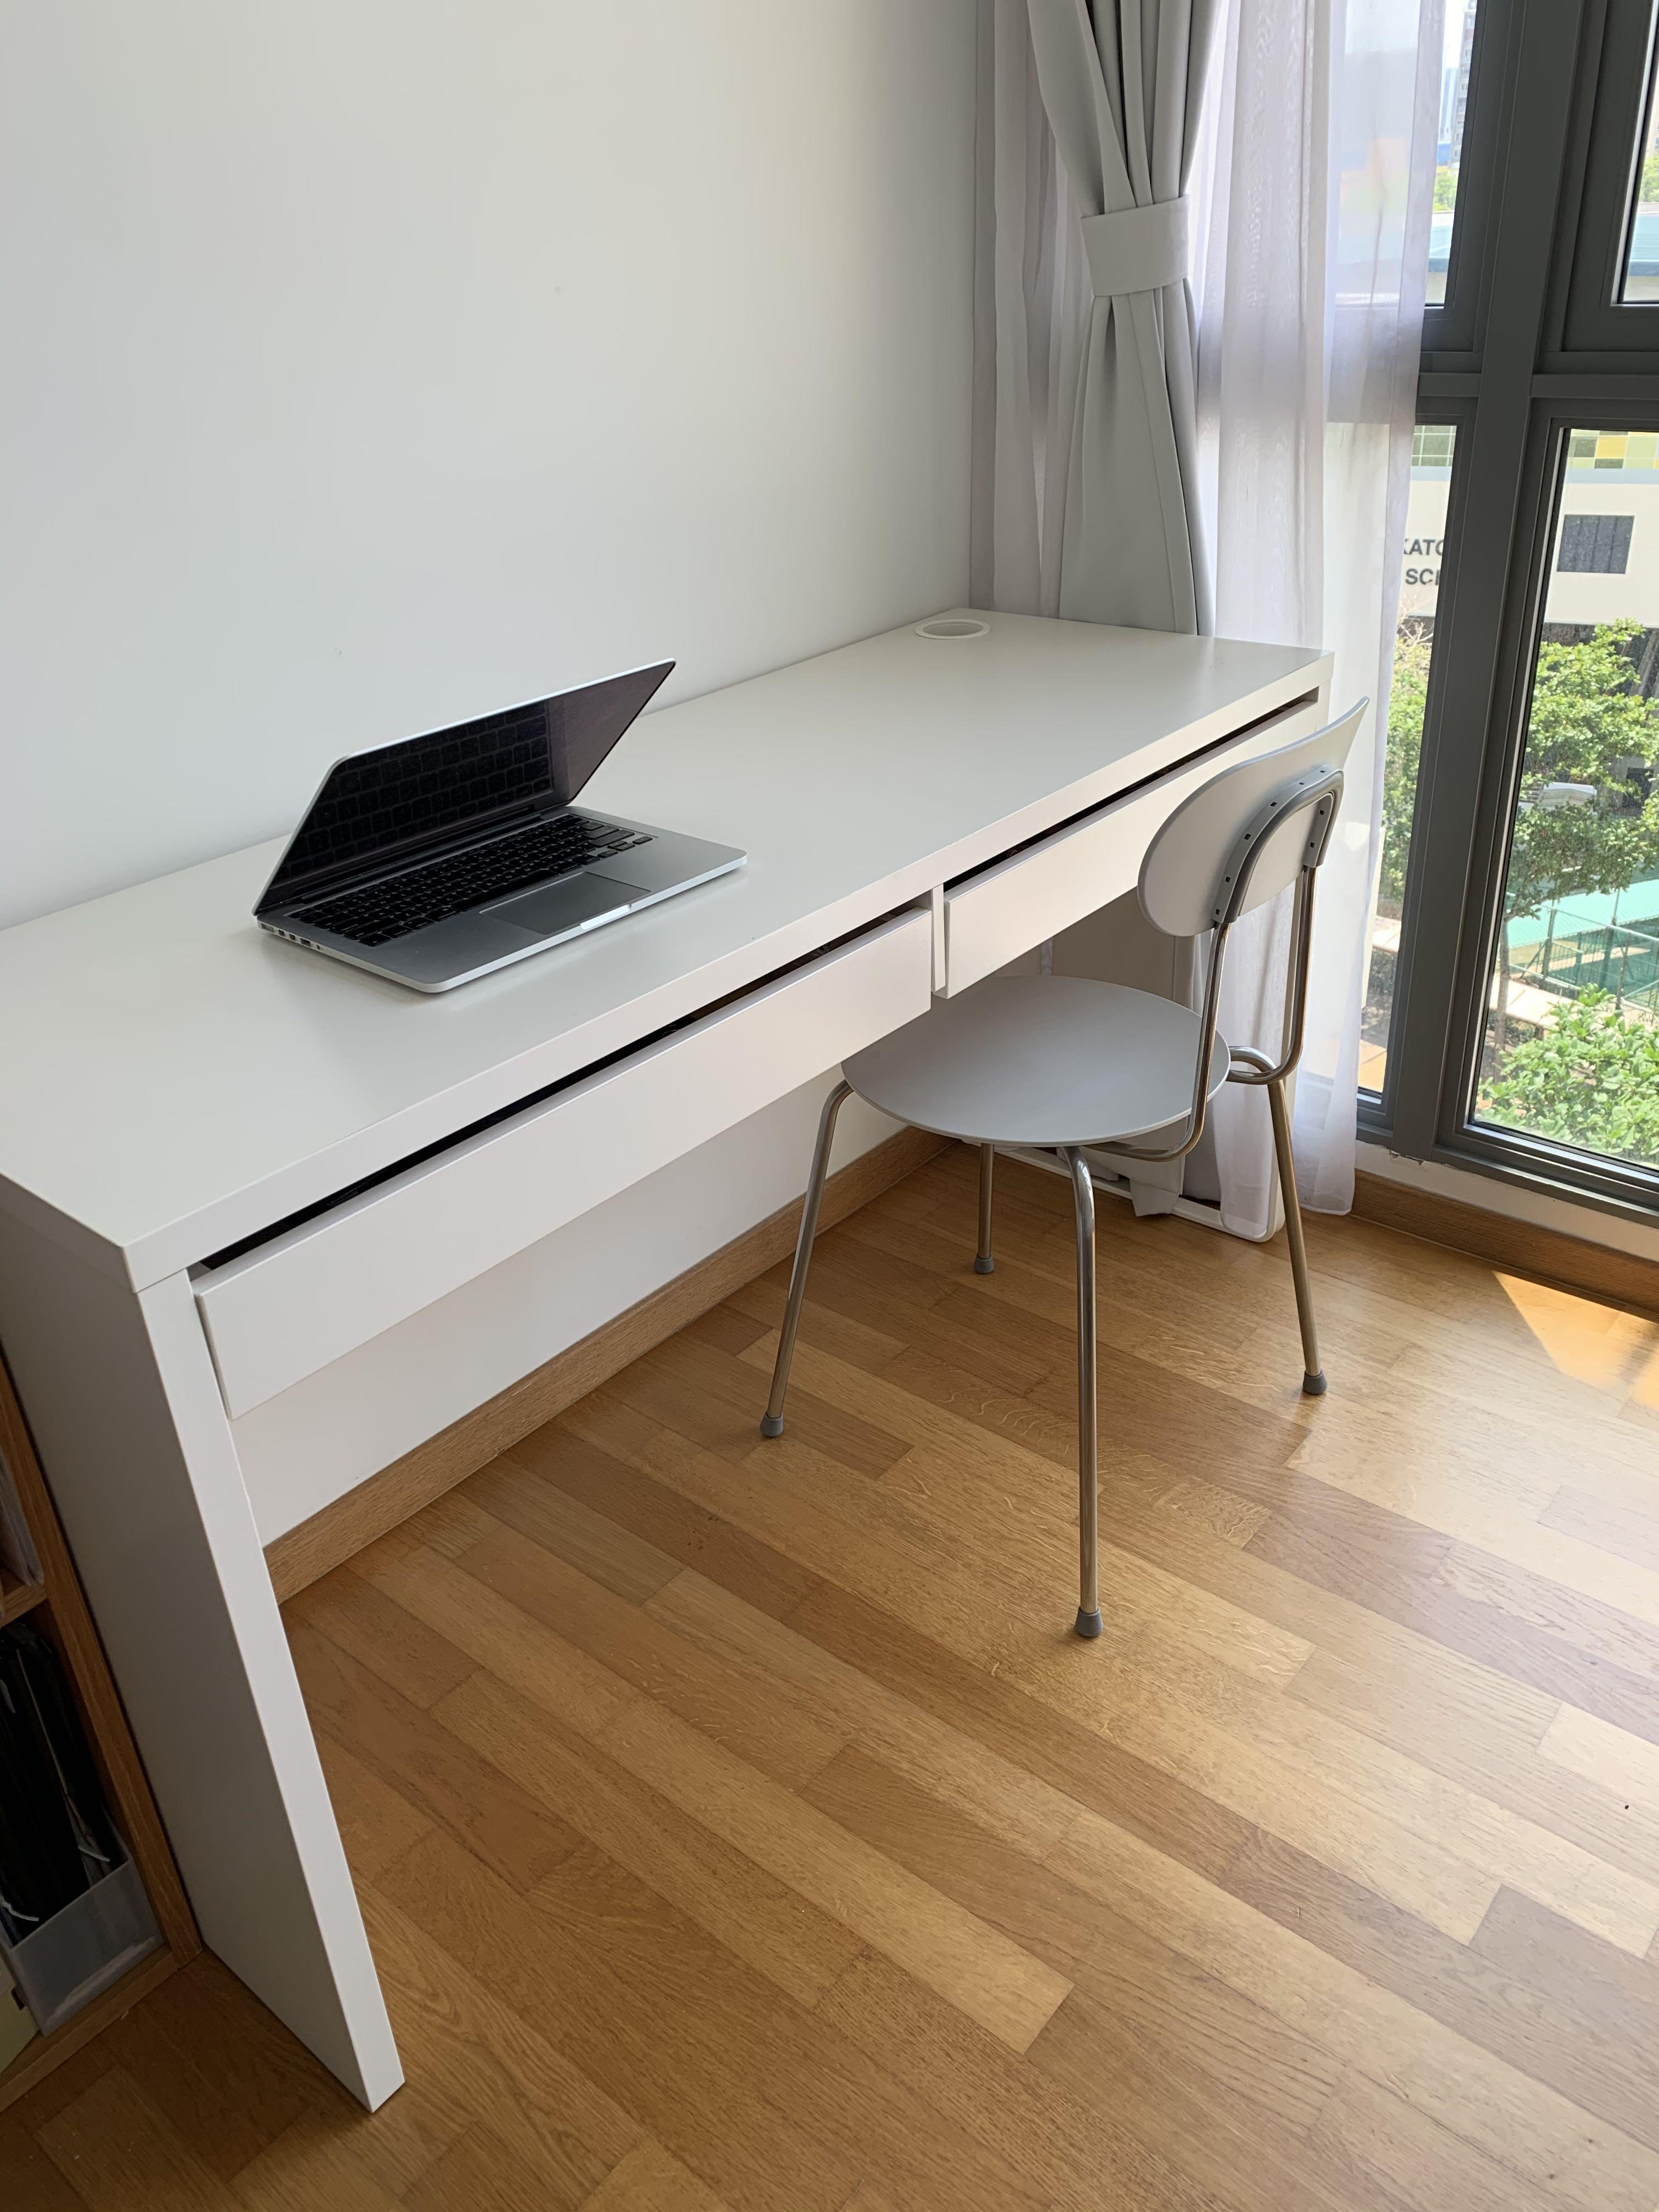 Ikea Desk Desks Computer Desks Desks For Home Furniture